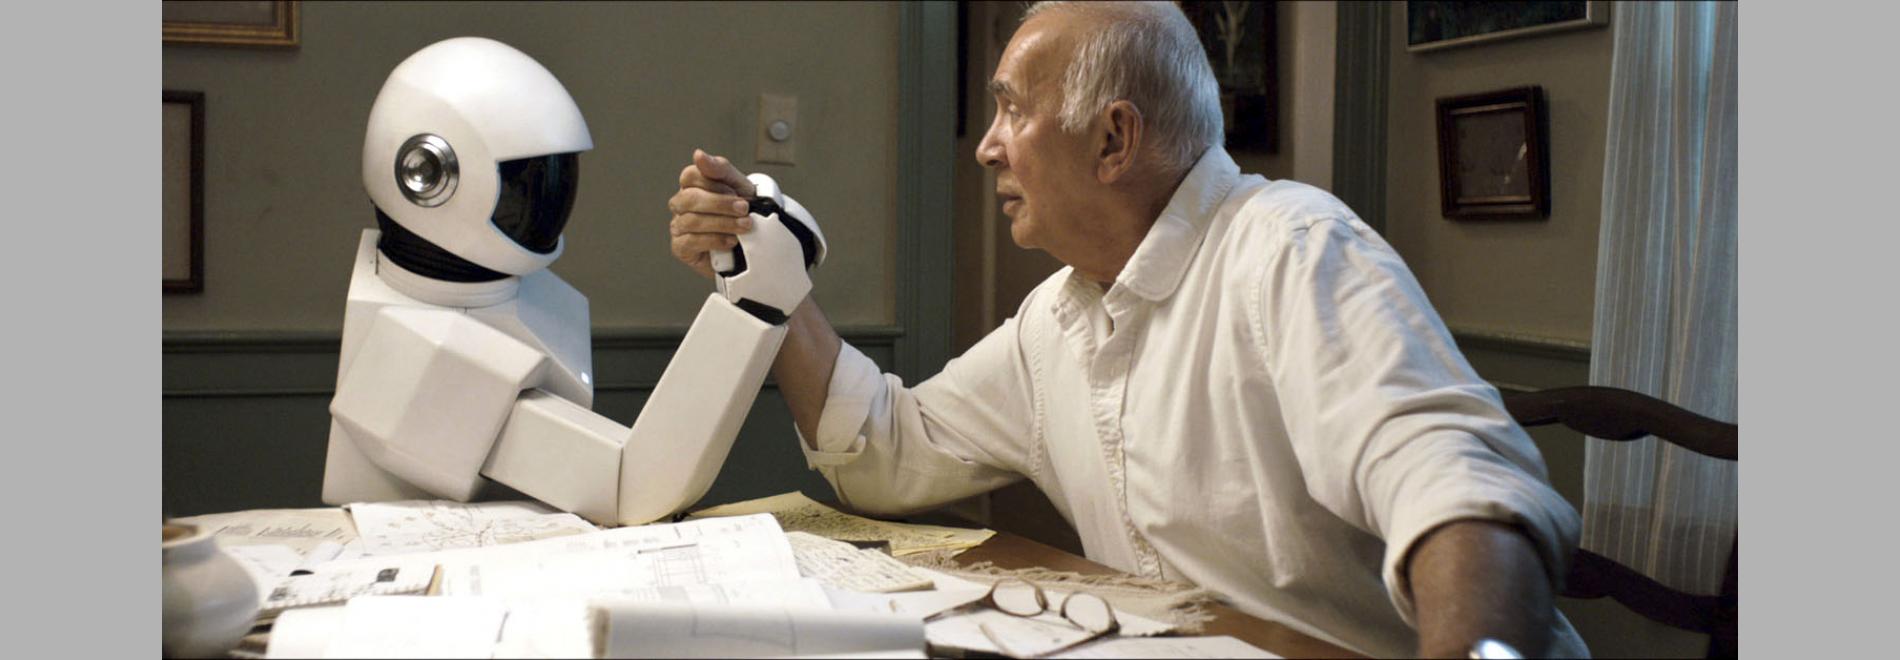 Robots i Mad Doctors: 'Robot & Frank'